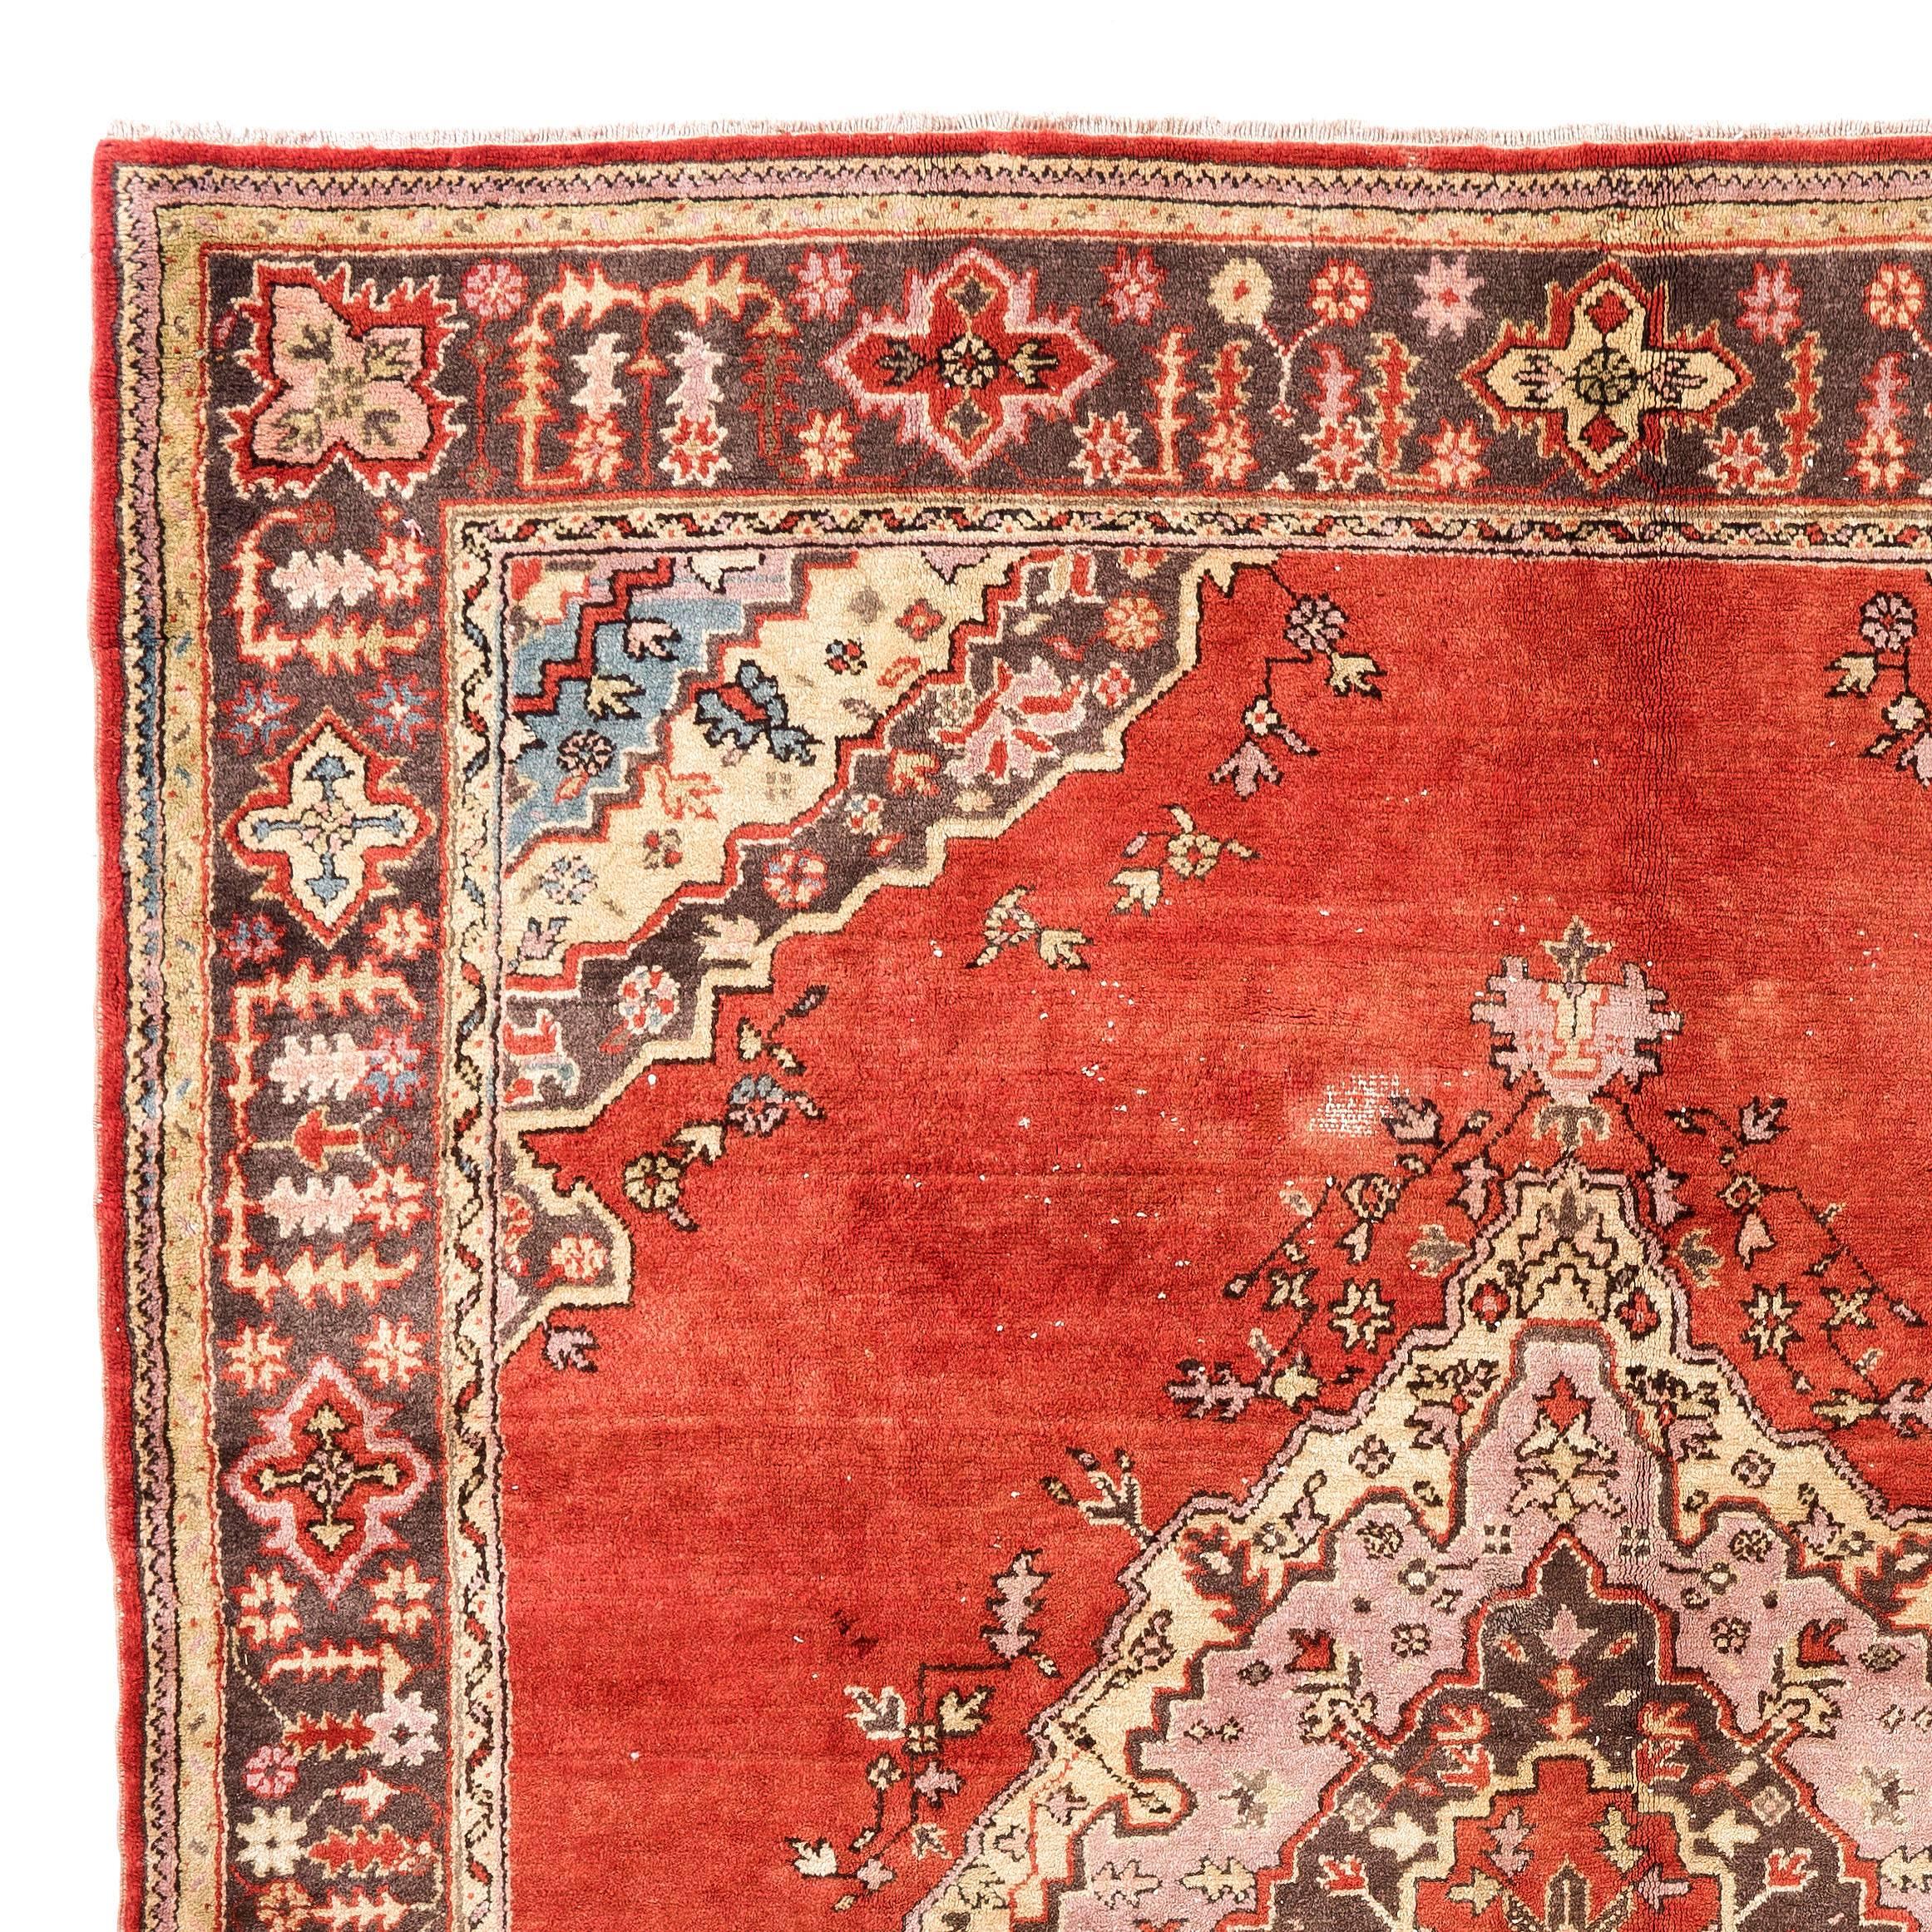 Ein antiker Oushak-Teppich aus der ersten Hälfte des 20. Jahrhunderts mit einem seltenen Quadratmaß von 8x9,5 ft. Der Teppich hat einen mittelhohen Wollflor auf Wollbasis, ist in gutem Zustand, sehr sauber und robust.

Es zeigt ein großes